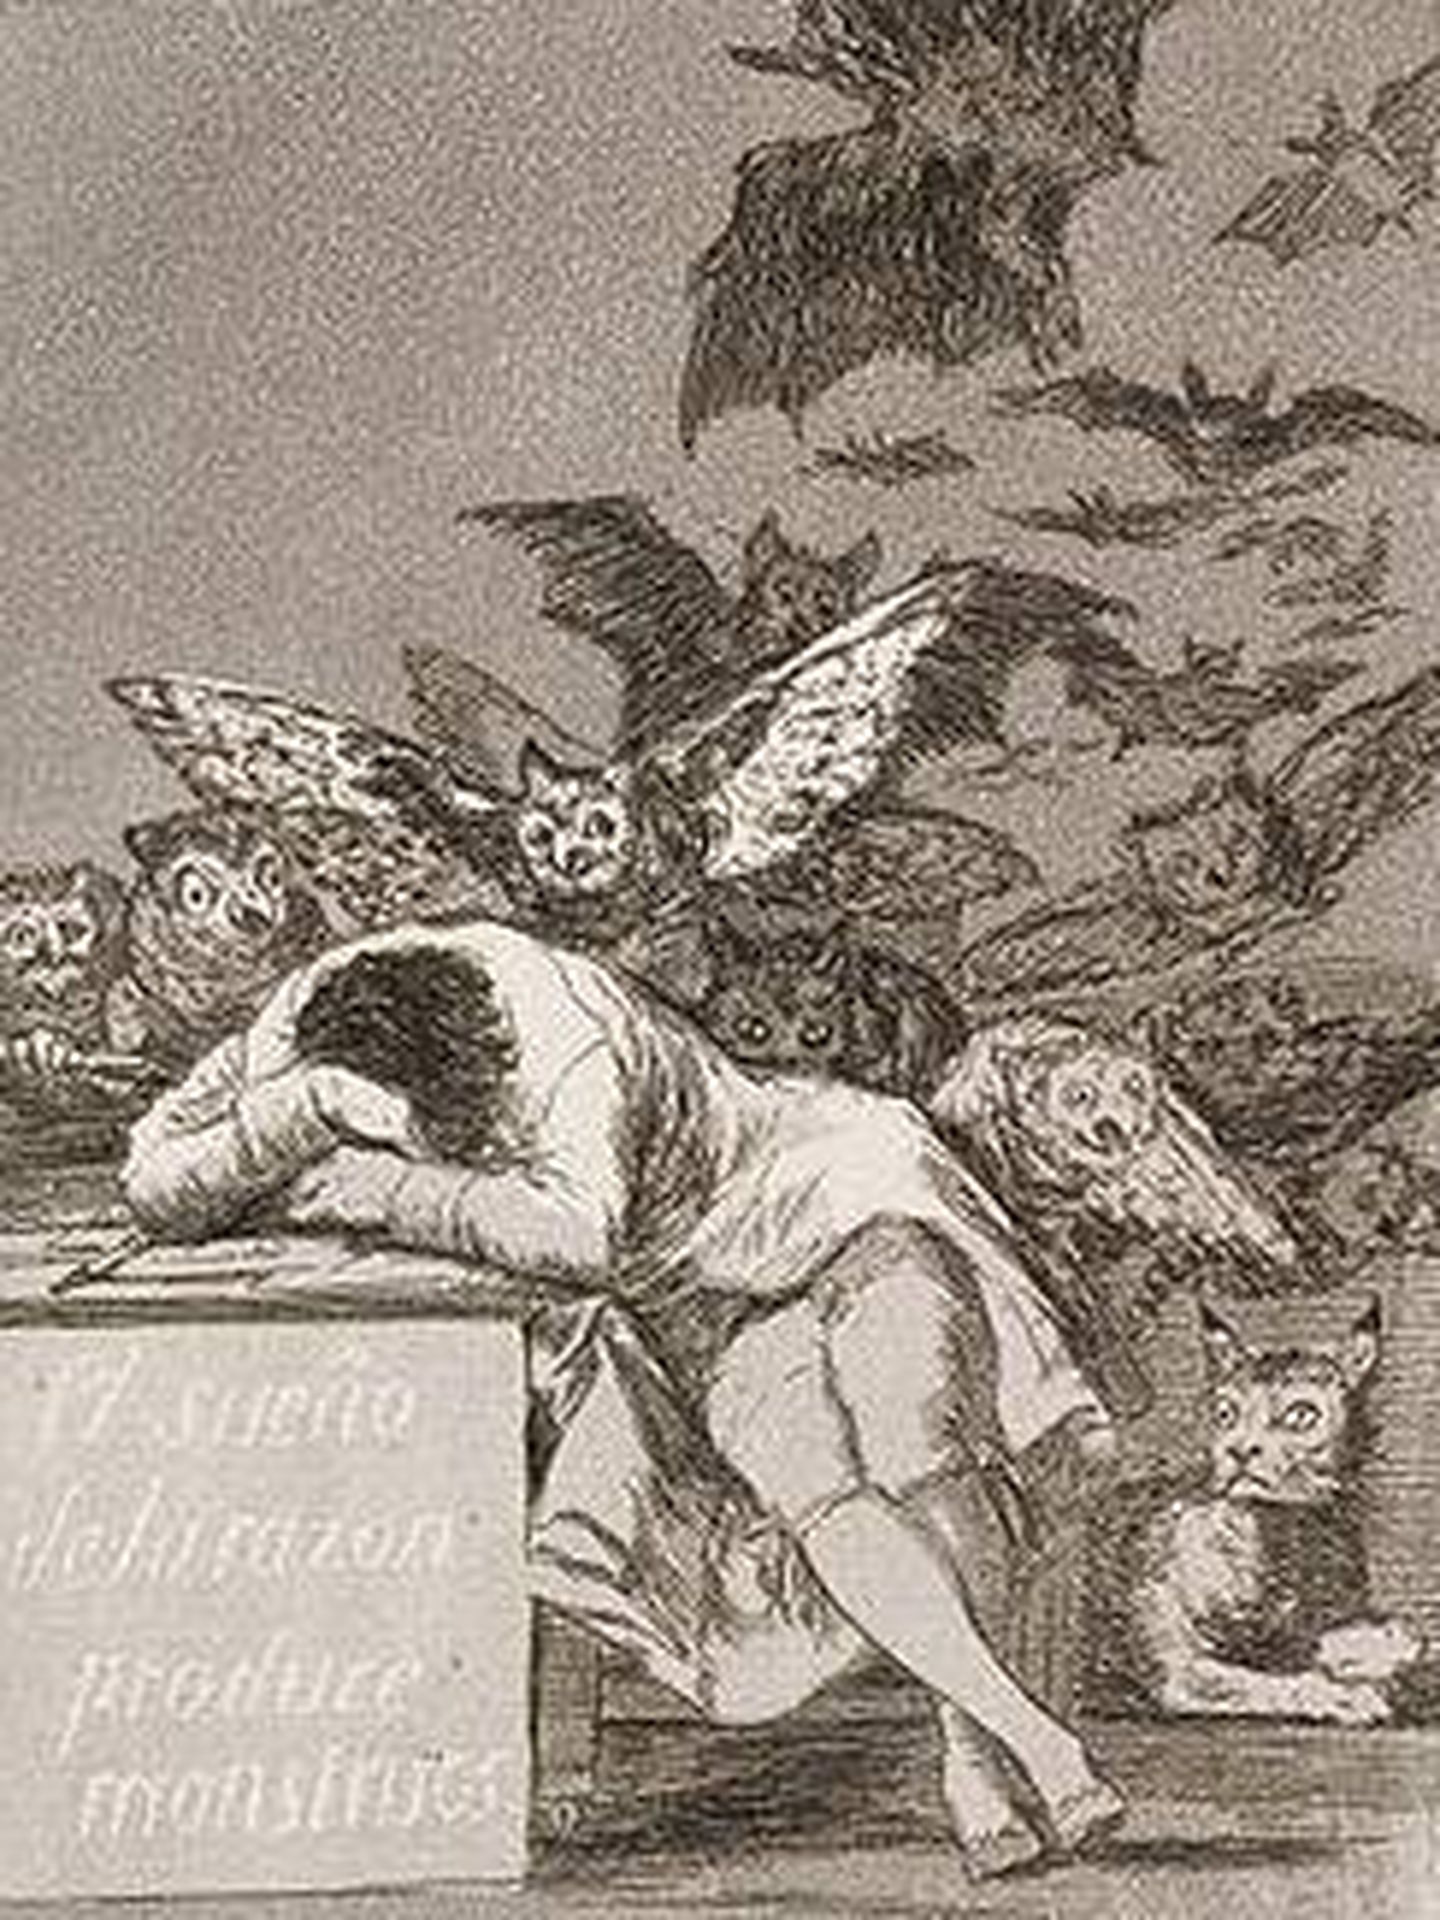 El sueño de la razón produce monstruos. Francisco de Goya.